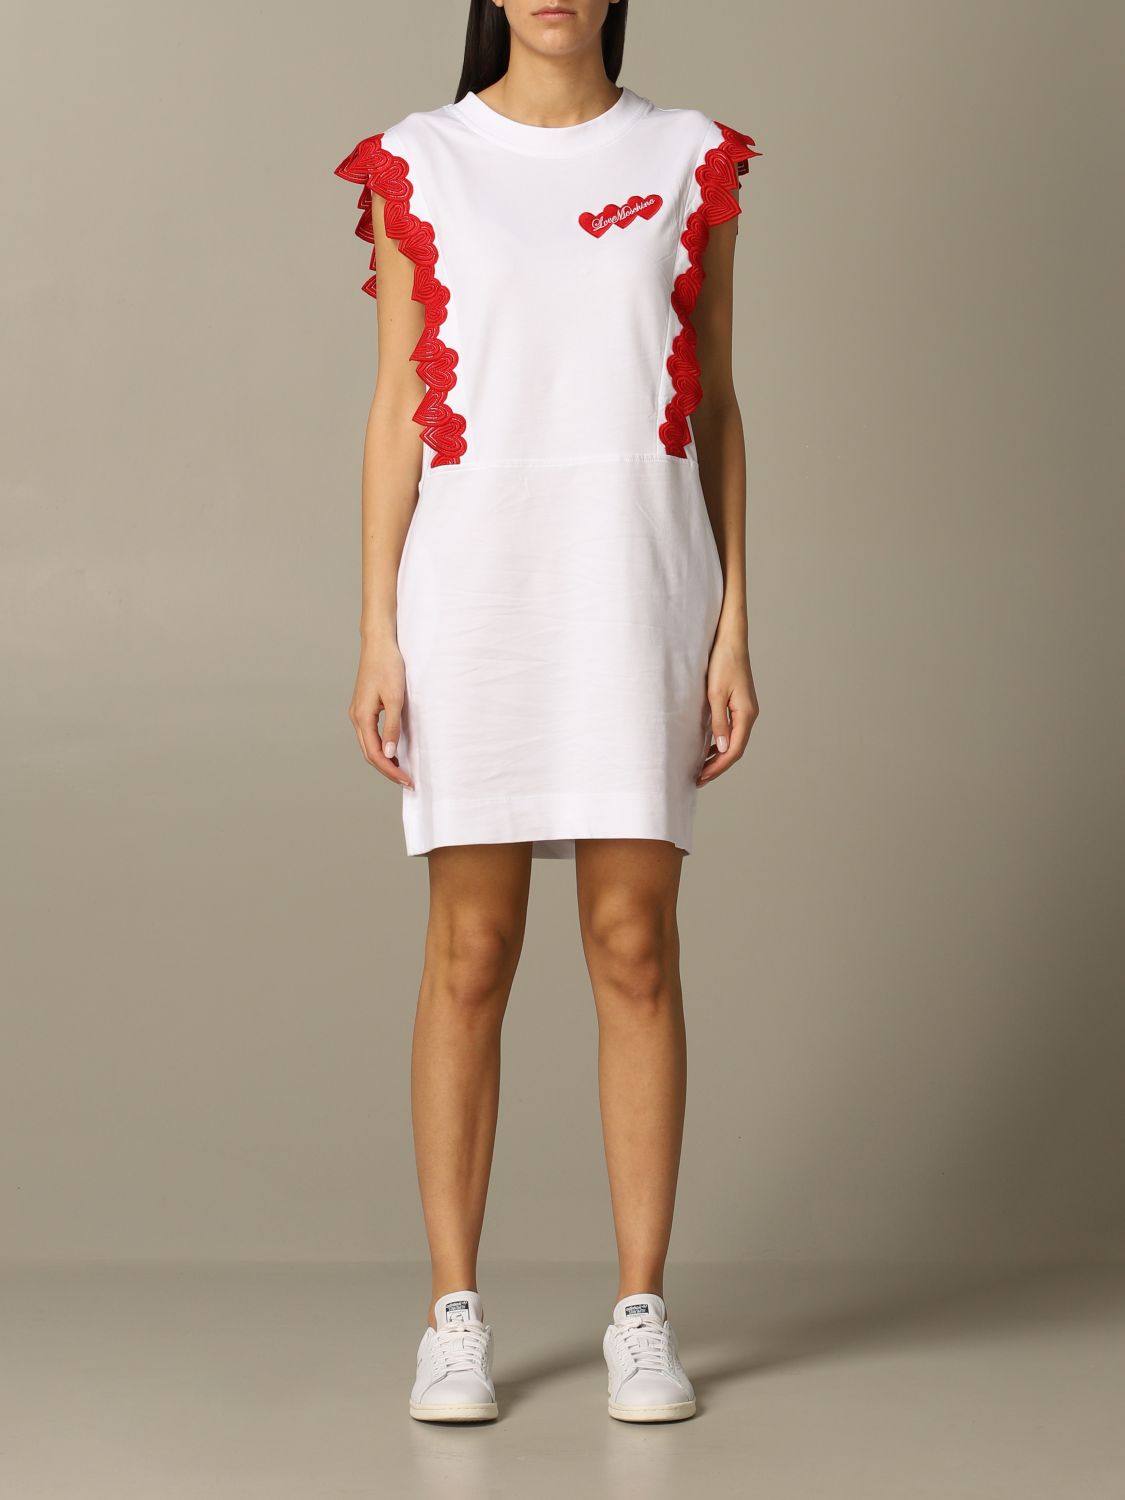 white moschino dress